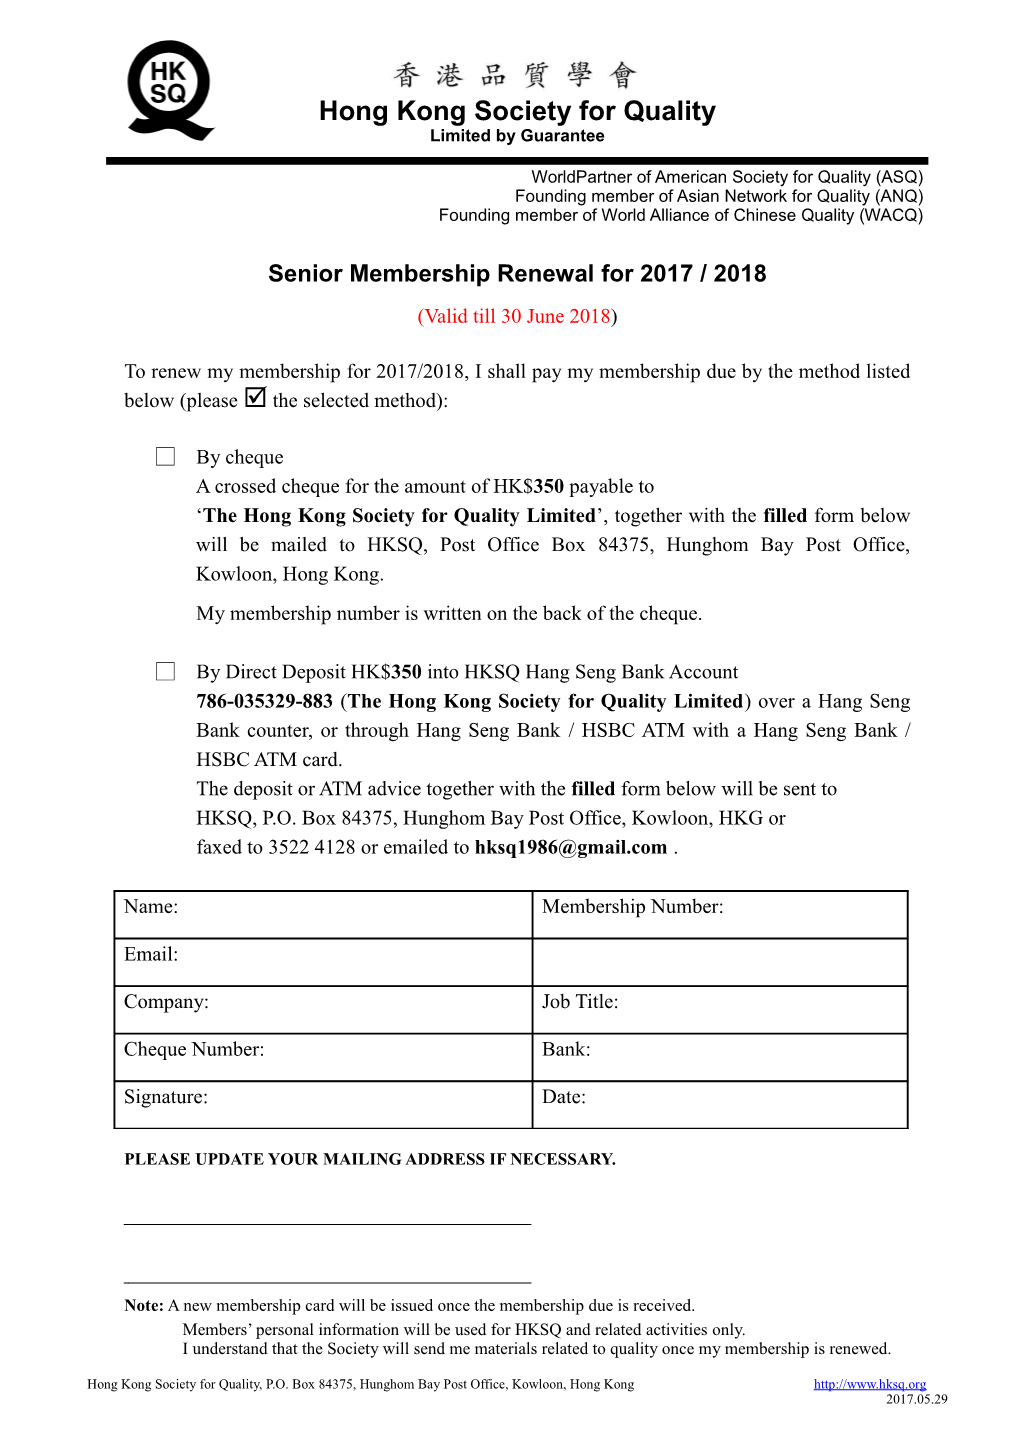 Membership Renewal Form-Senior